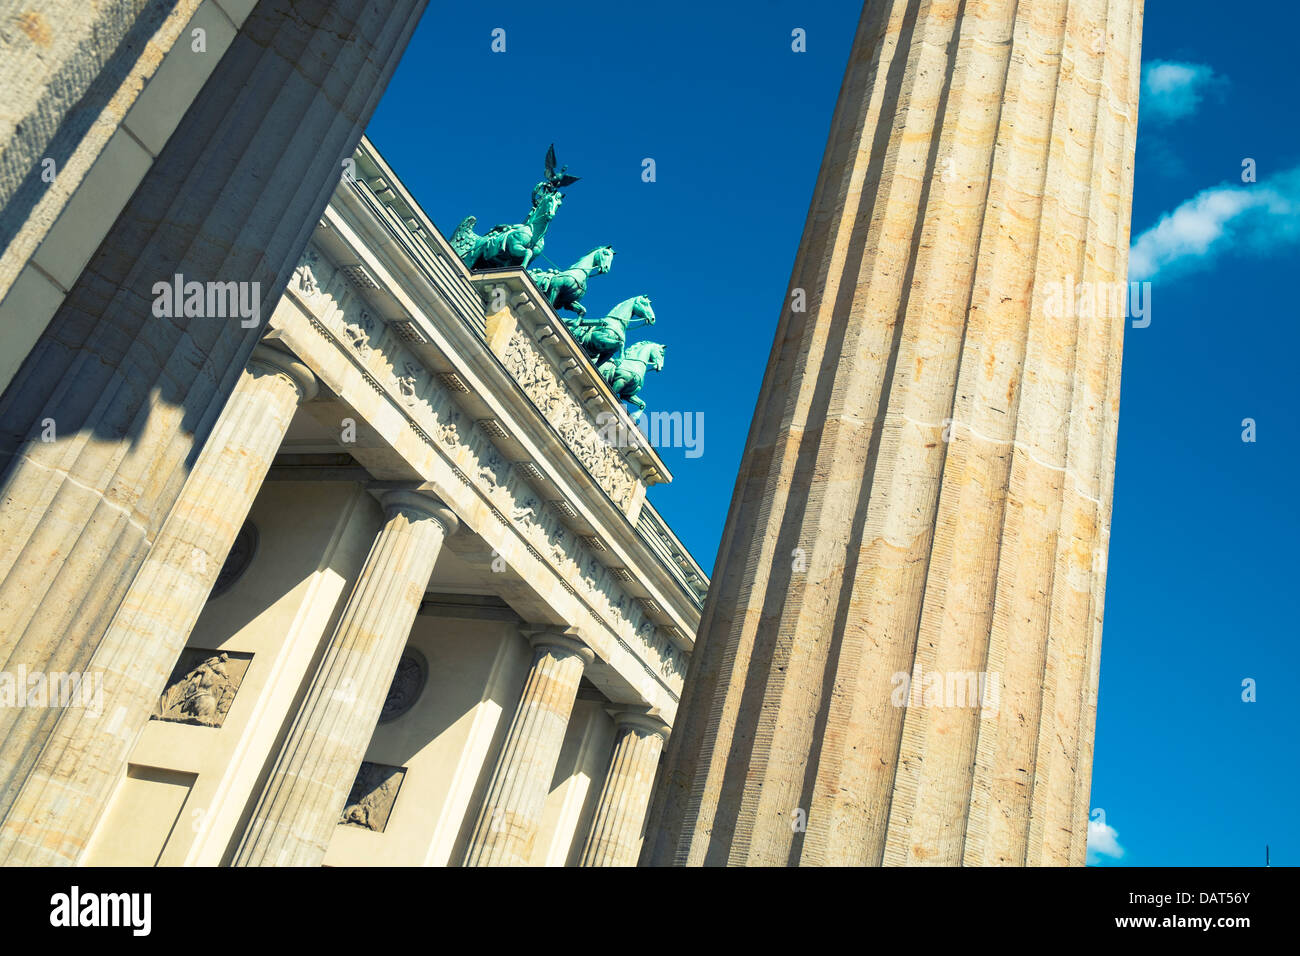 Brandenburg Gate in Berlin Germany Stock Photo